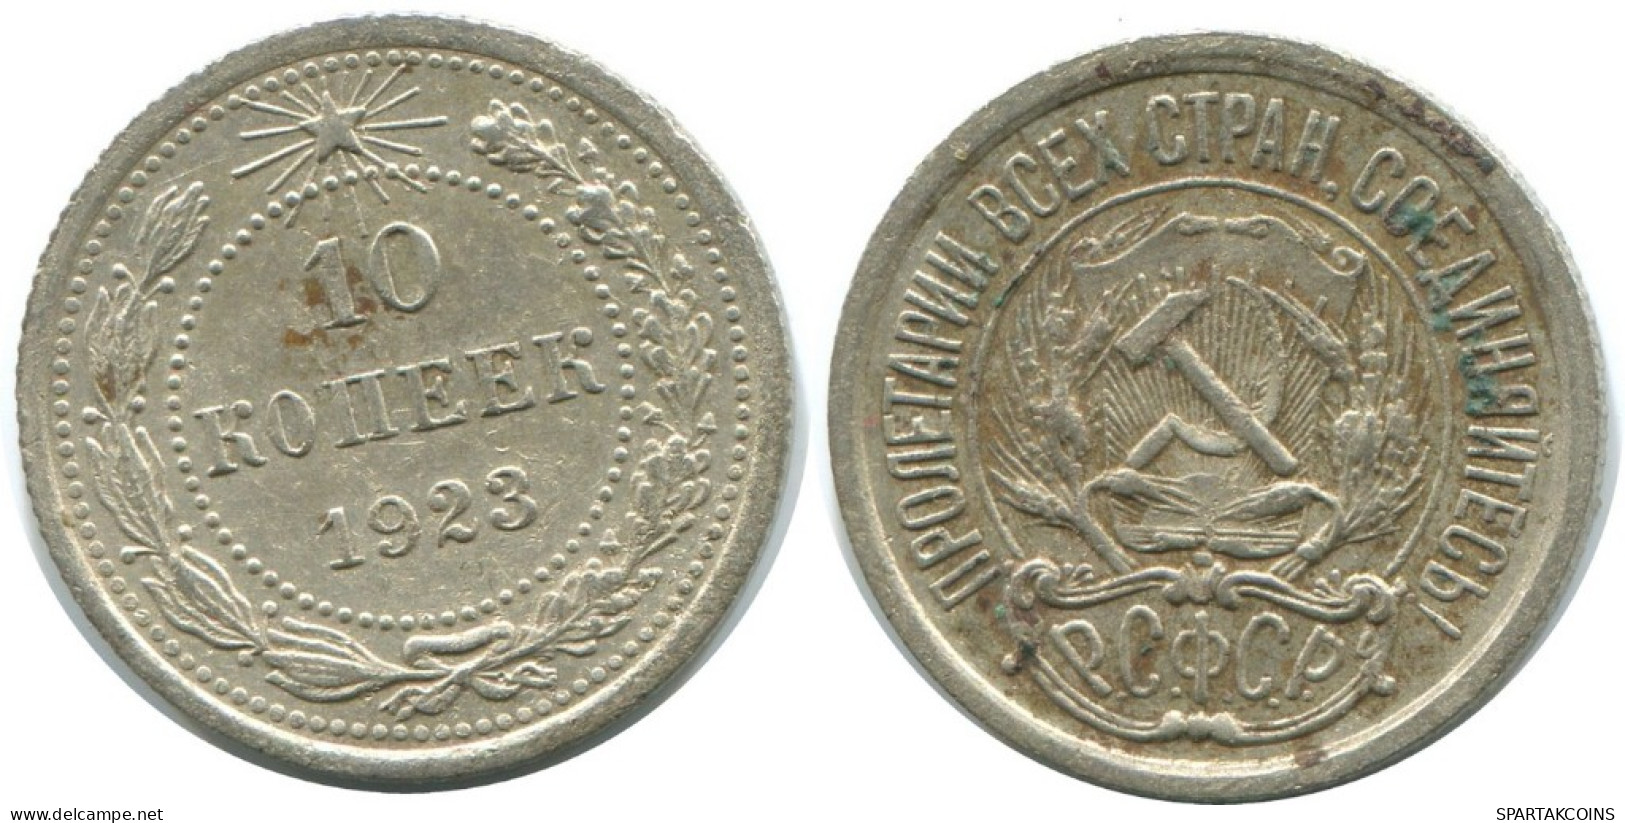 10 KOPEKS 1923 RUSSLAND RUSSIA RSFSR SILBER Münze HIGH GRADE #AE888.4.D.A - Russia